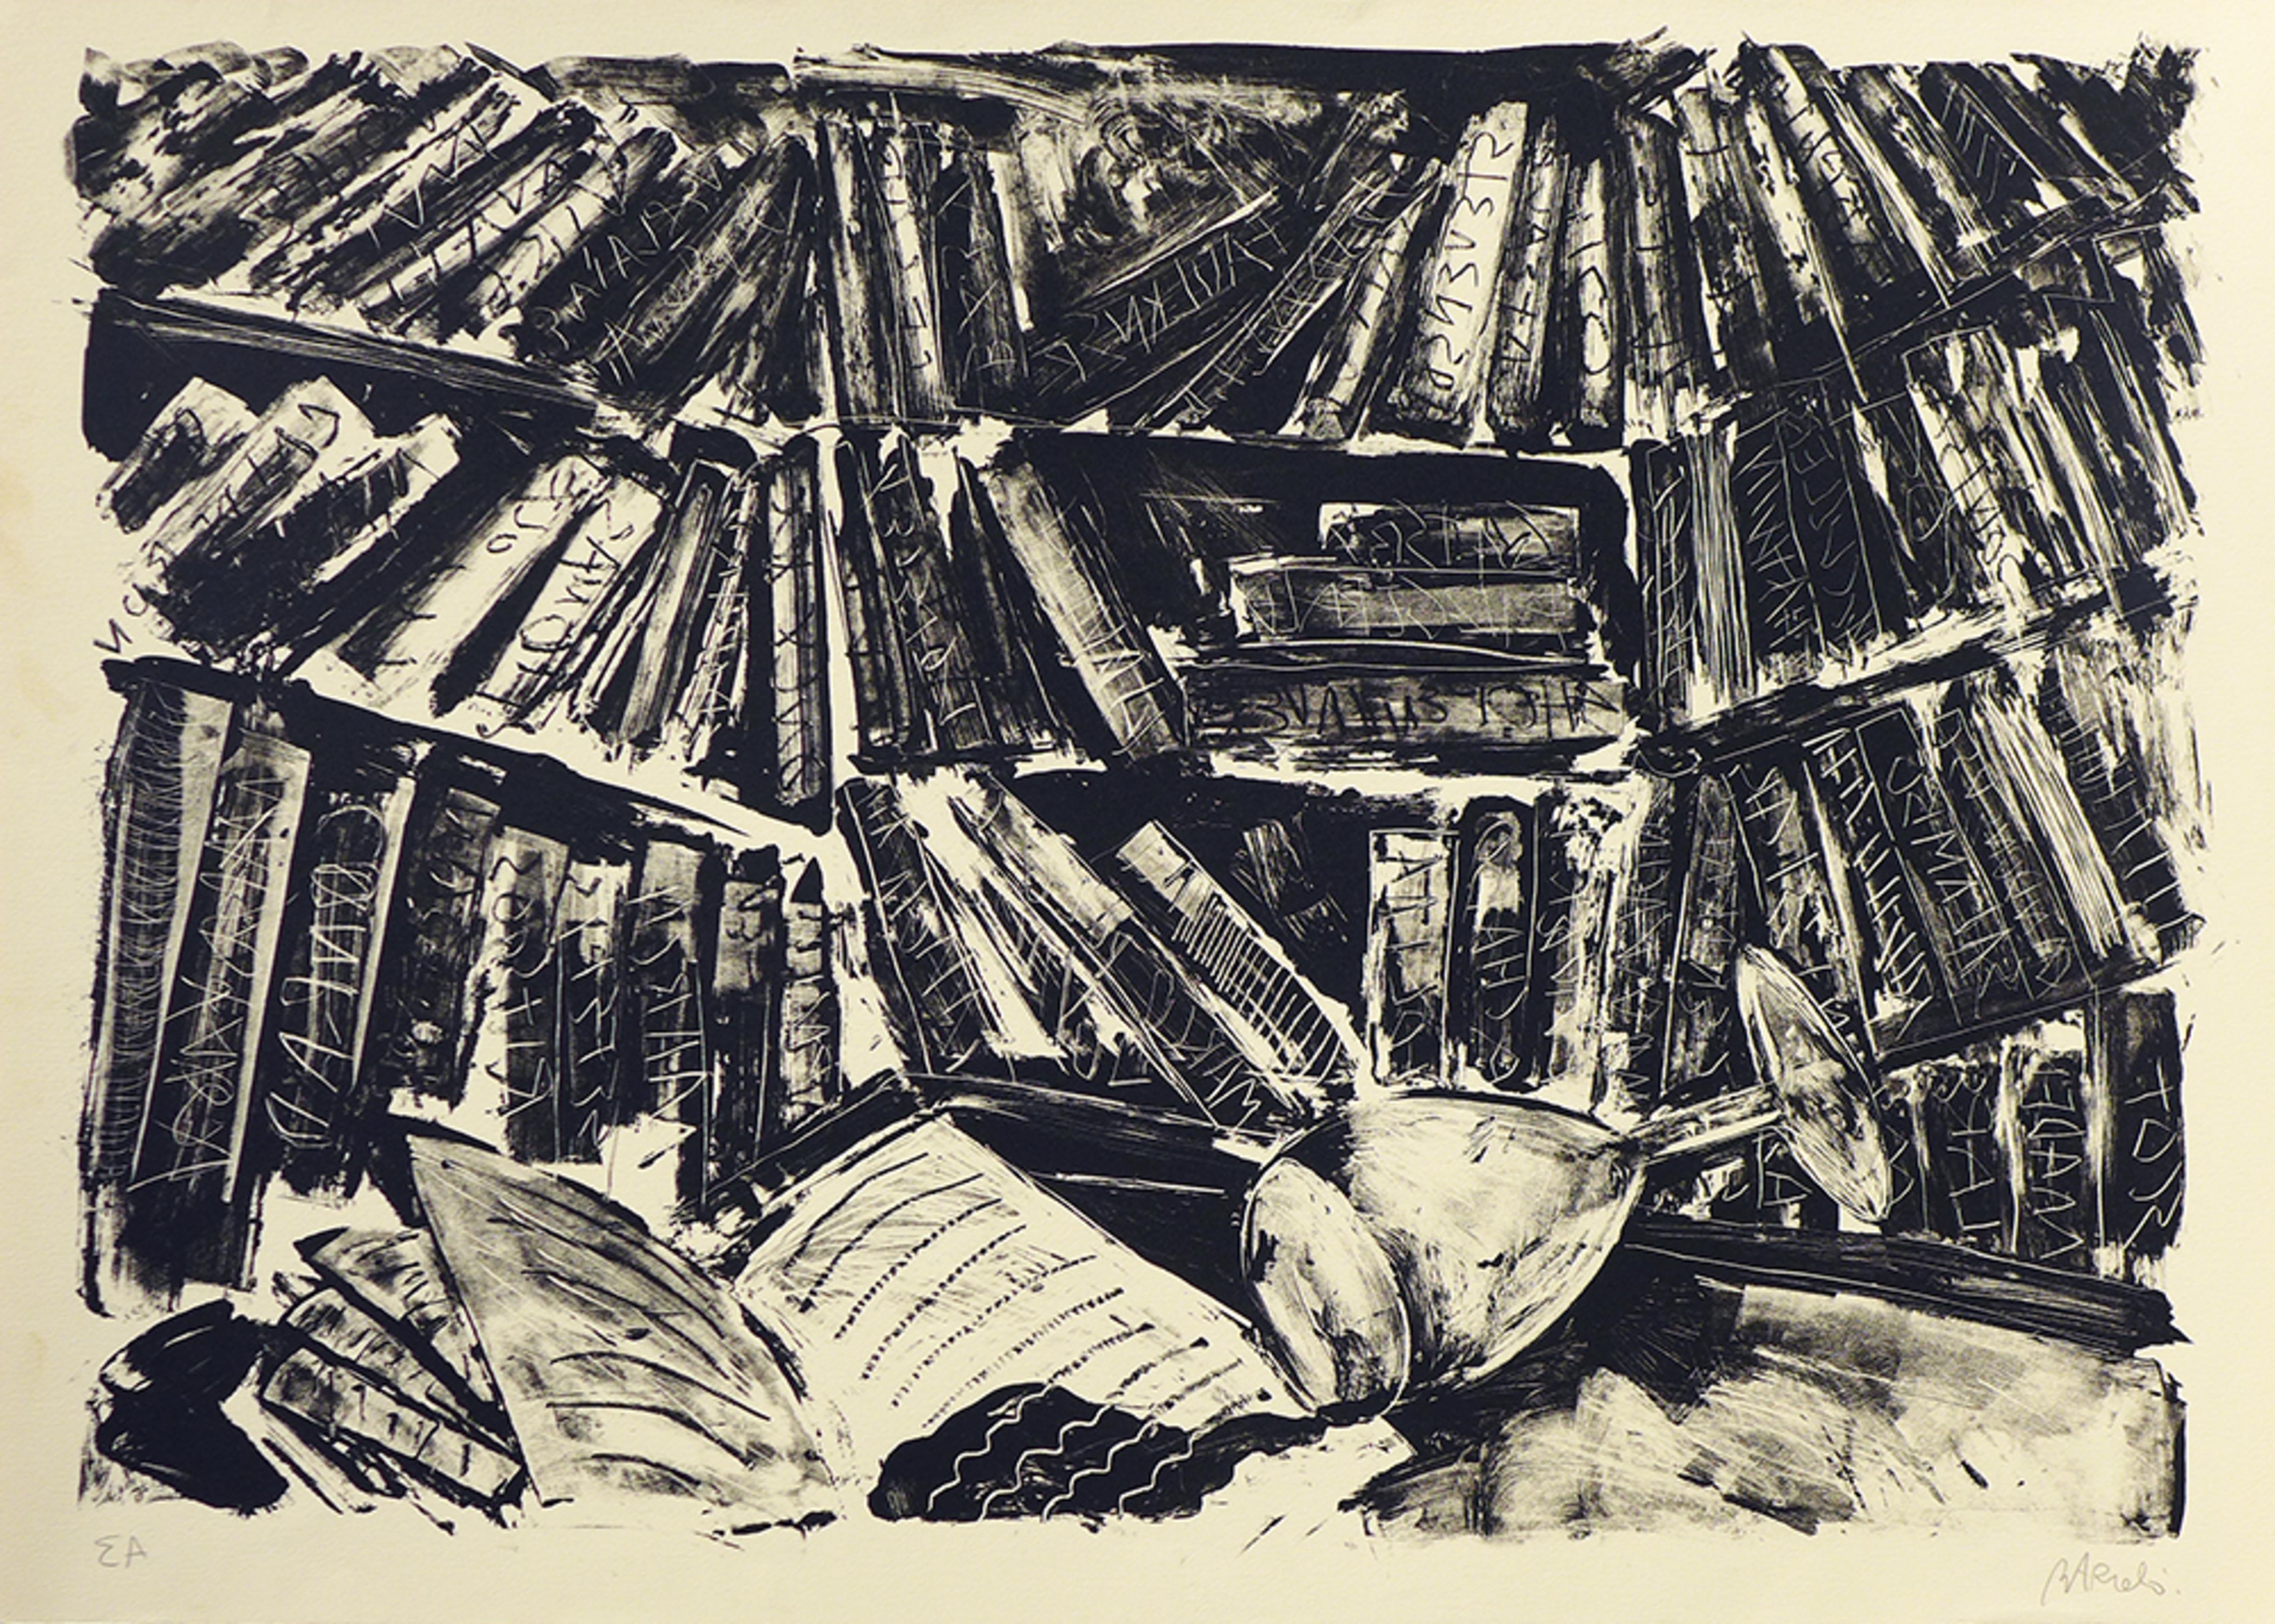 La bibliothèque - Print by Miquel Barceló